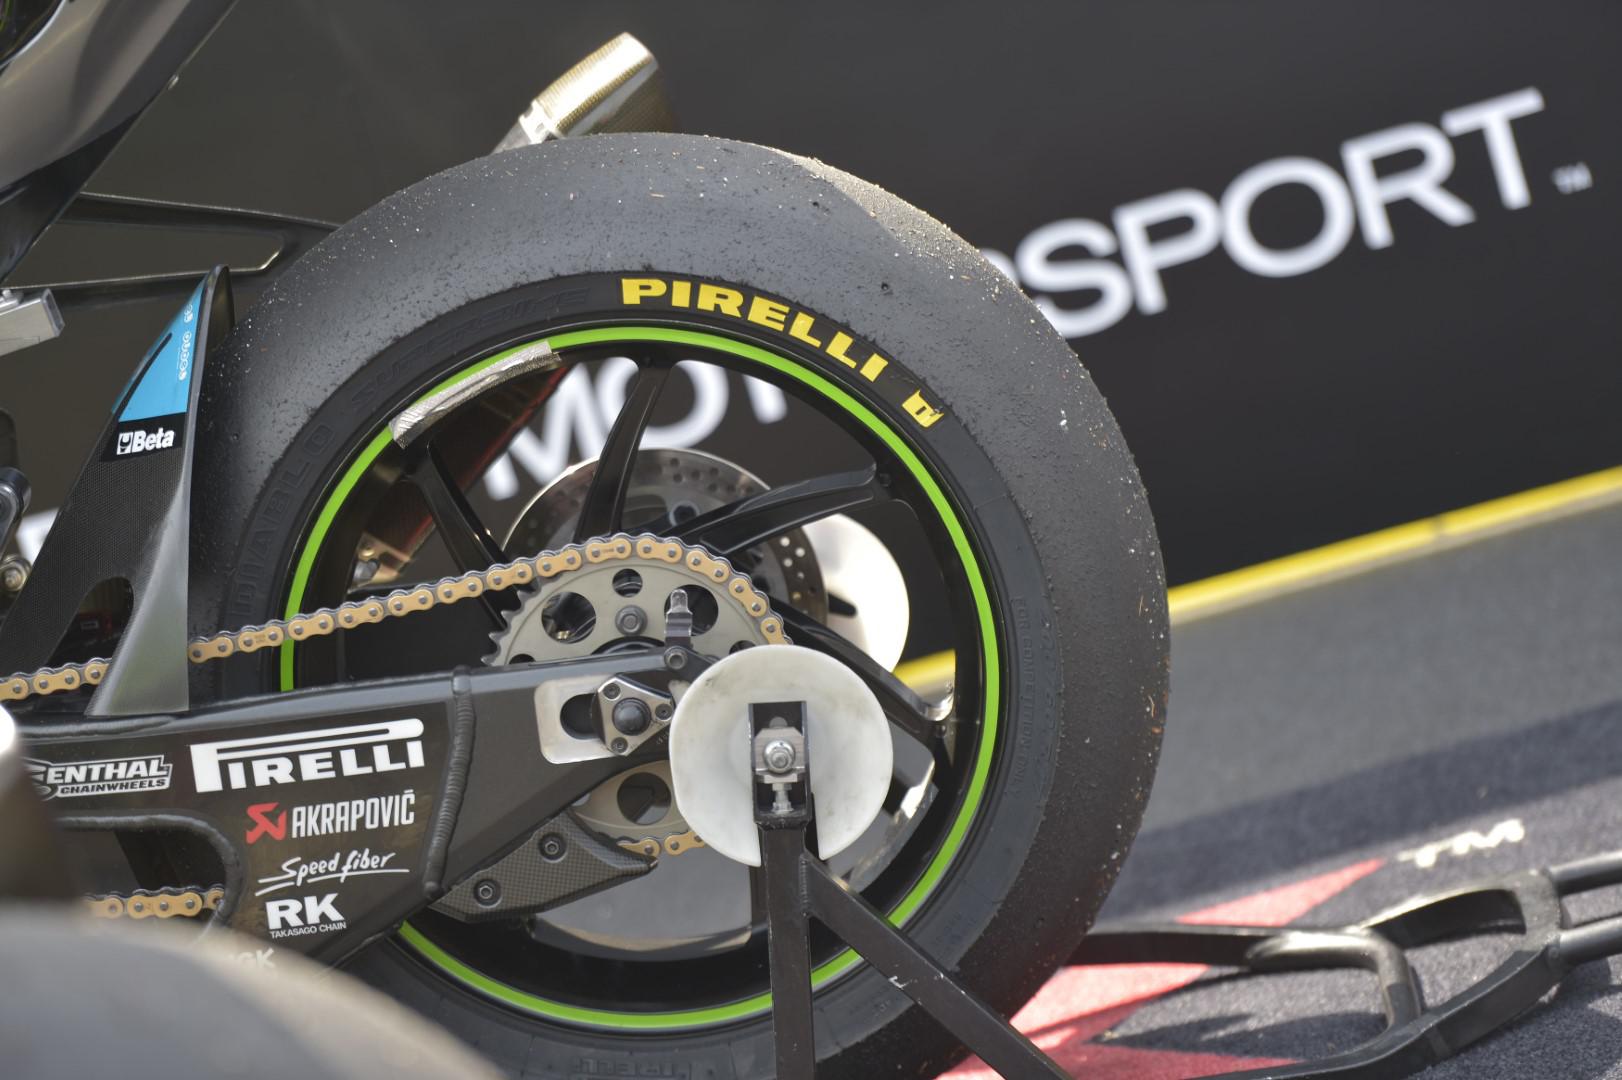 pirelli-fournisseur-officiel-pour-toutes-les-categories-du-championnat-du-monde-fim-superbike-jusqu-en-2023-1142-3.jpg